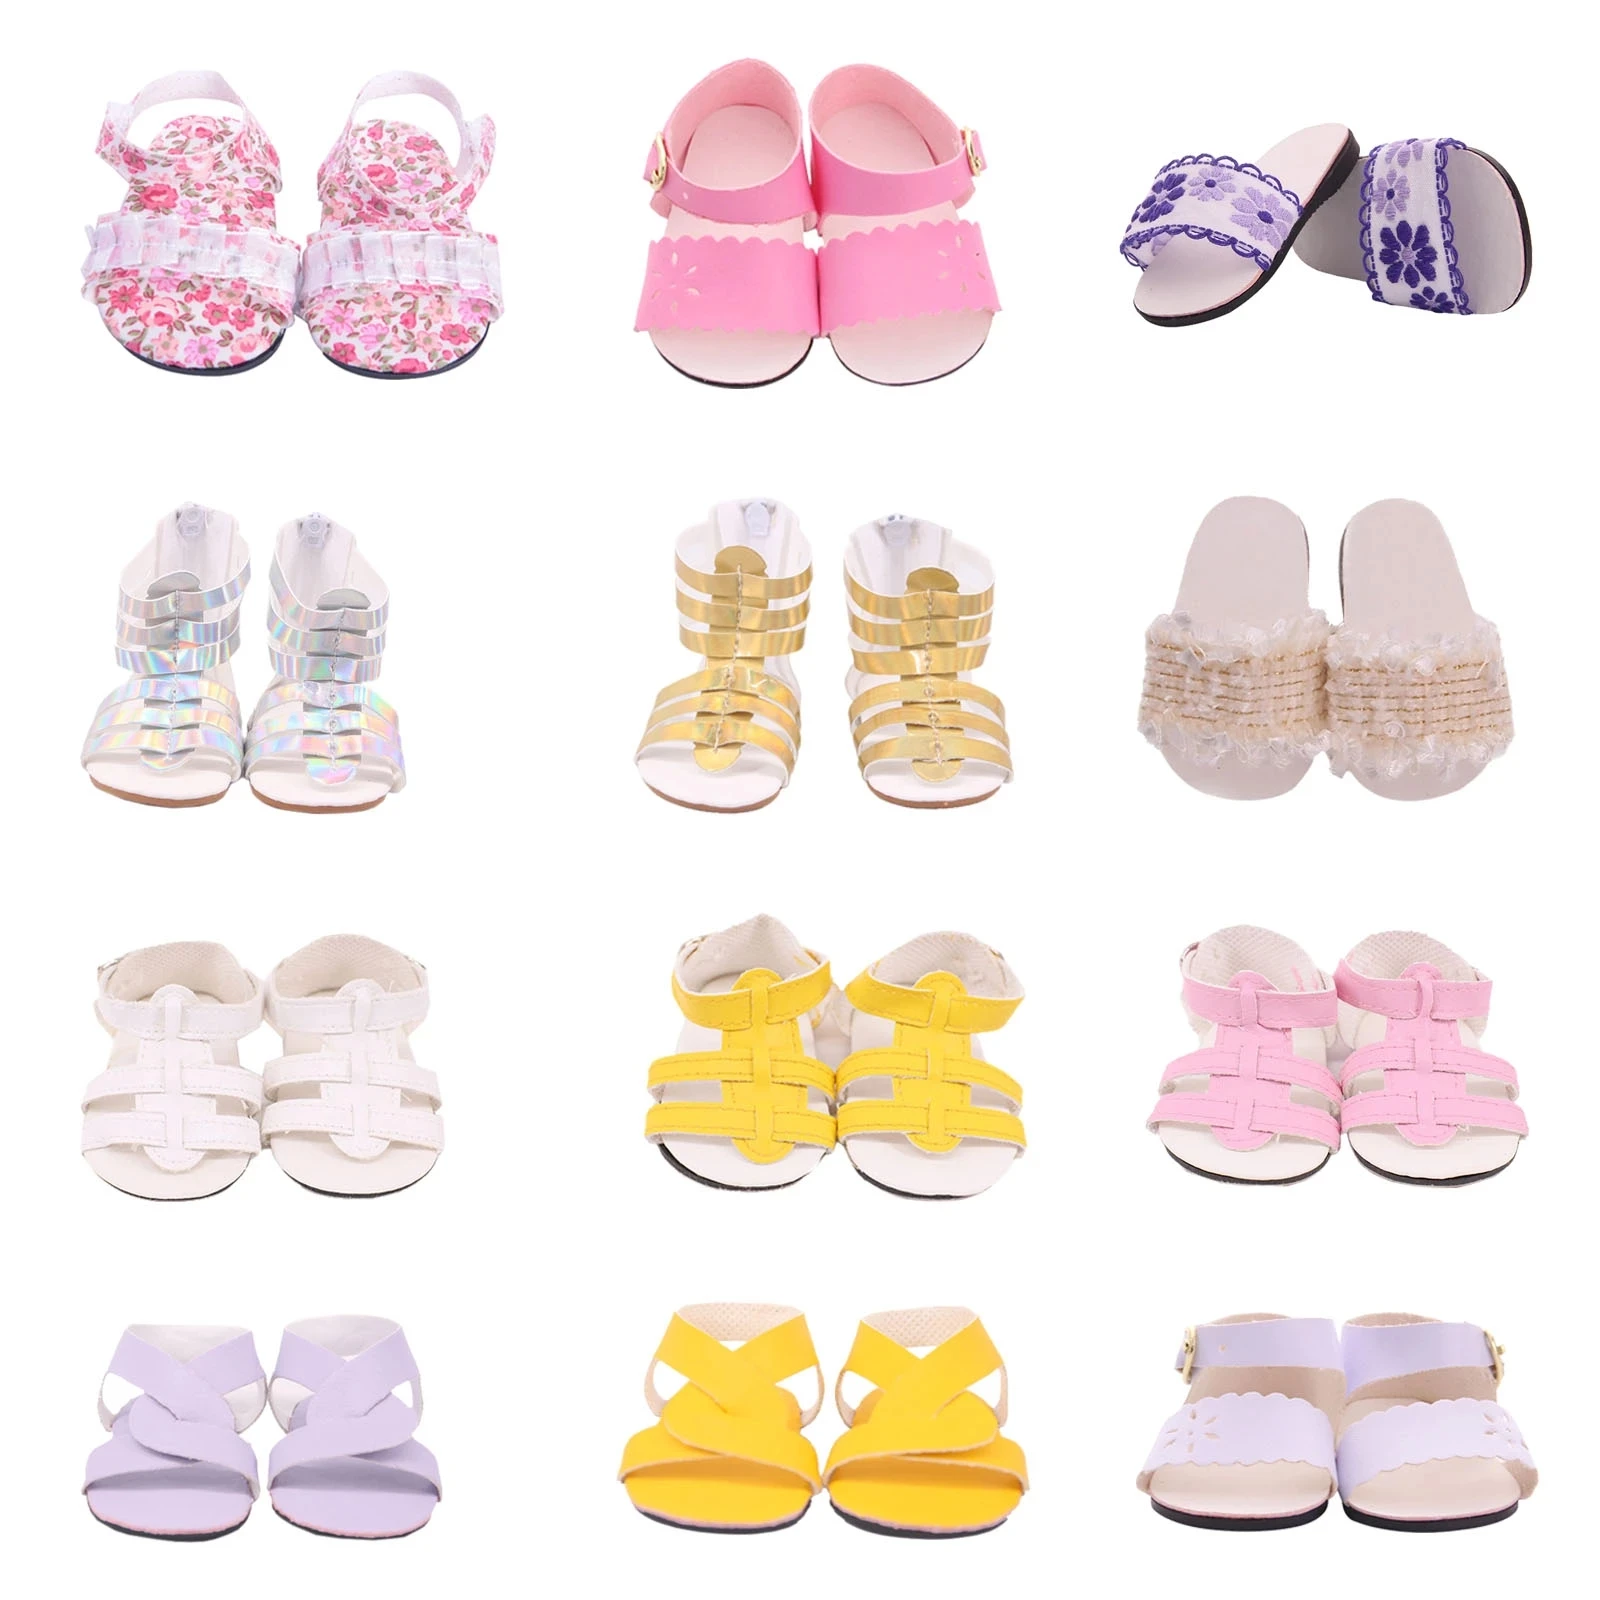 7CM Bebek Ayakkabı Sandalet Botları 18 İnç Amerikan ve 43 Cm Bebek Yeni Doğan Bebek Aksesuarları Bizim Nesil Oyuncaklar Kızlar İçin